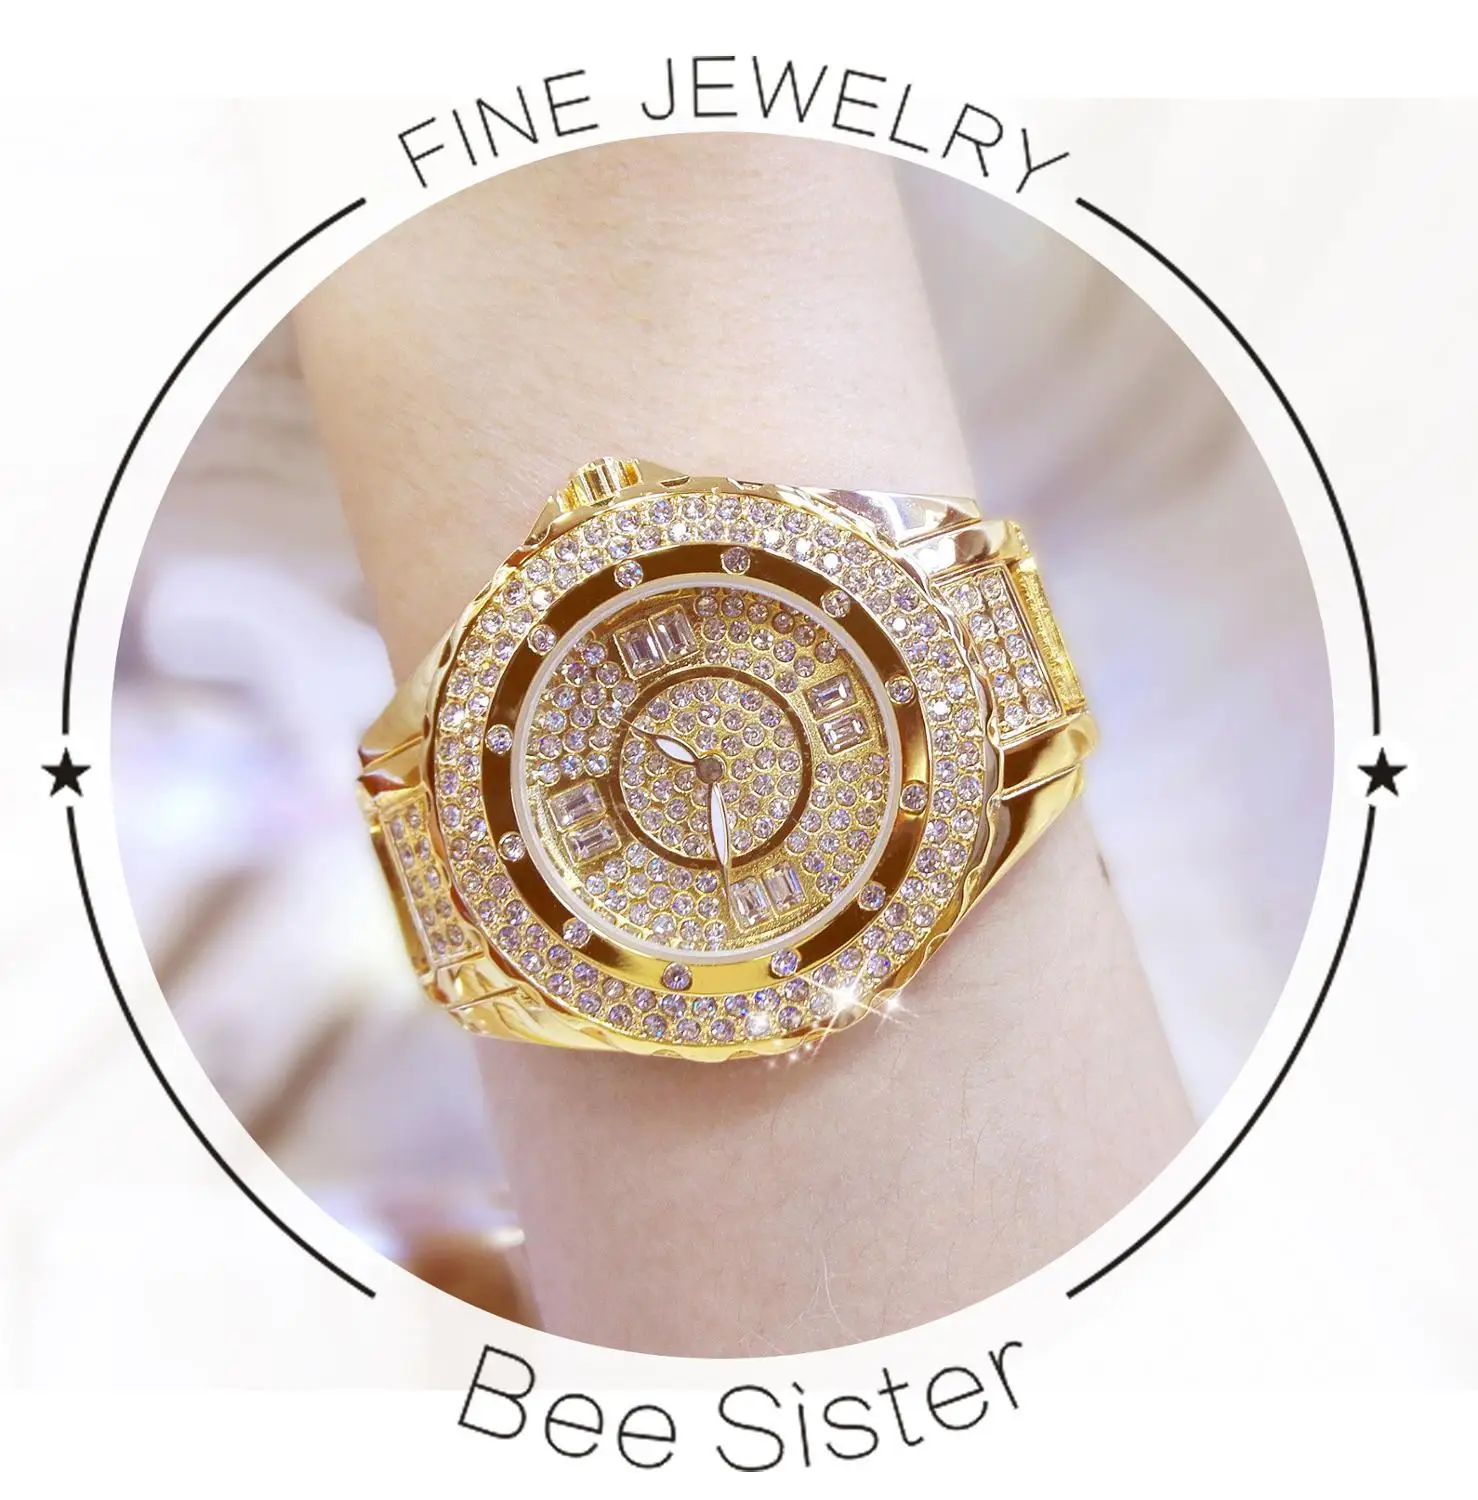 2023 Jahr Uhr für Frauen Frauen Armbanduhr heißen Verkauf Frauen Uhr tschechischen Diamant bling bling Sternen himmel Uhr Frau Geschenk